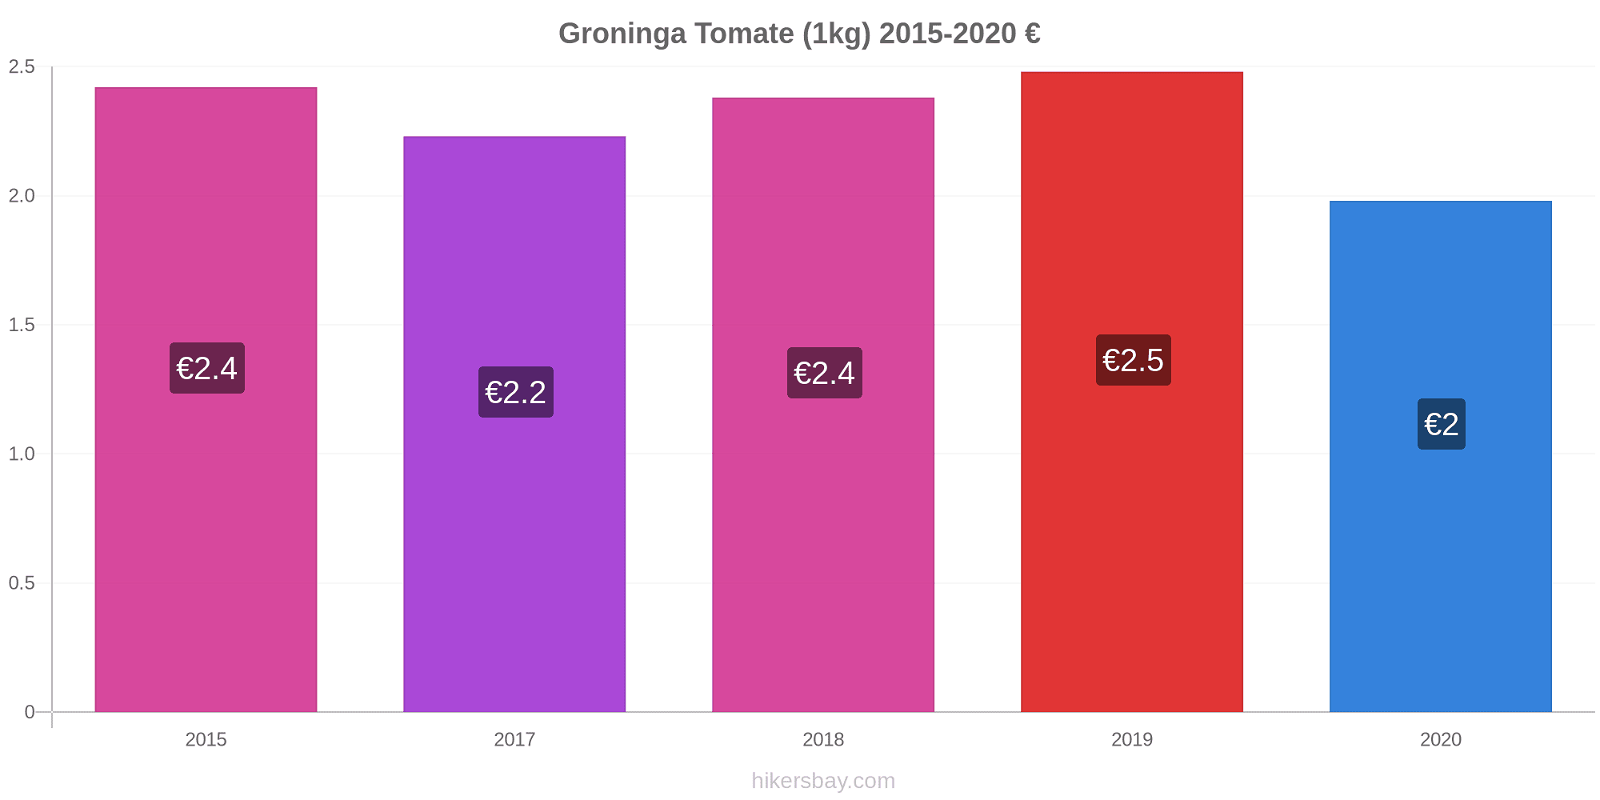 Groninga cambios de precios Tomate (1kg) hikersbay.com